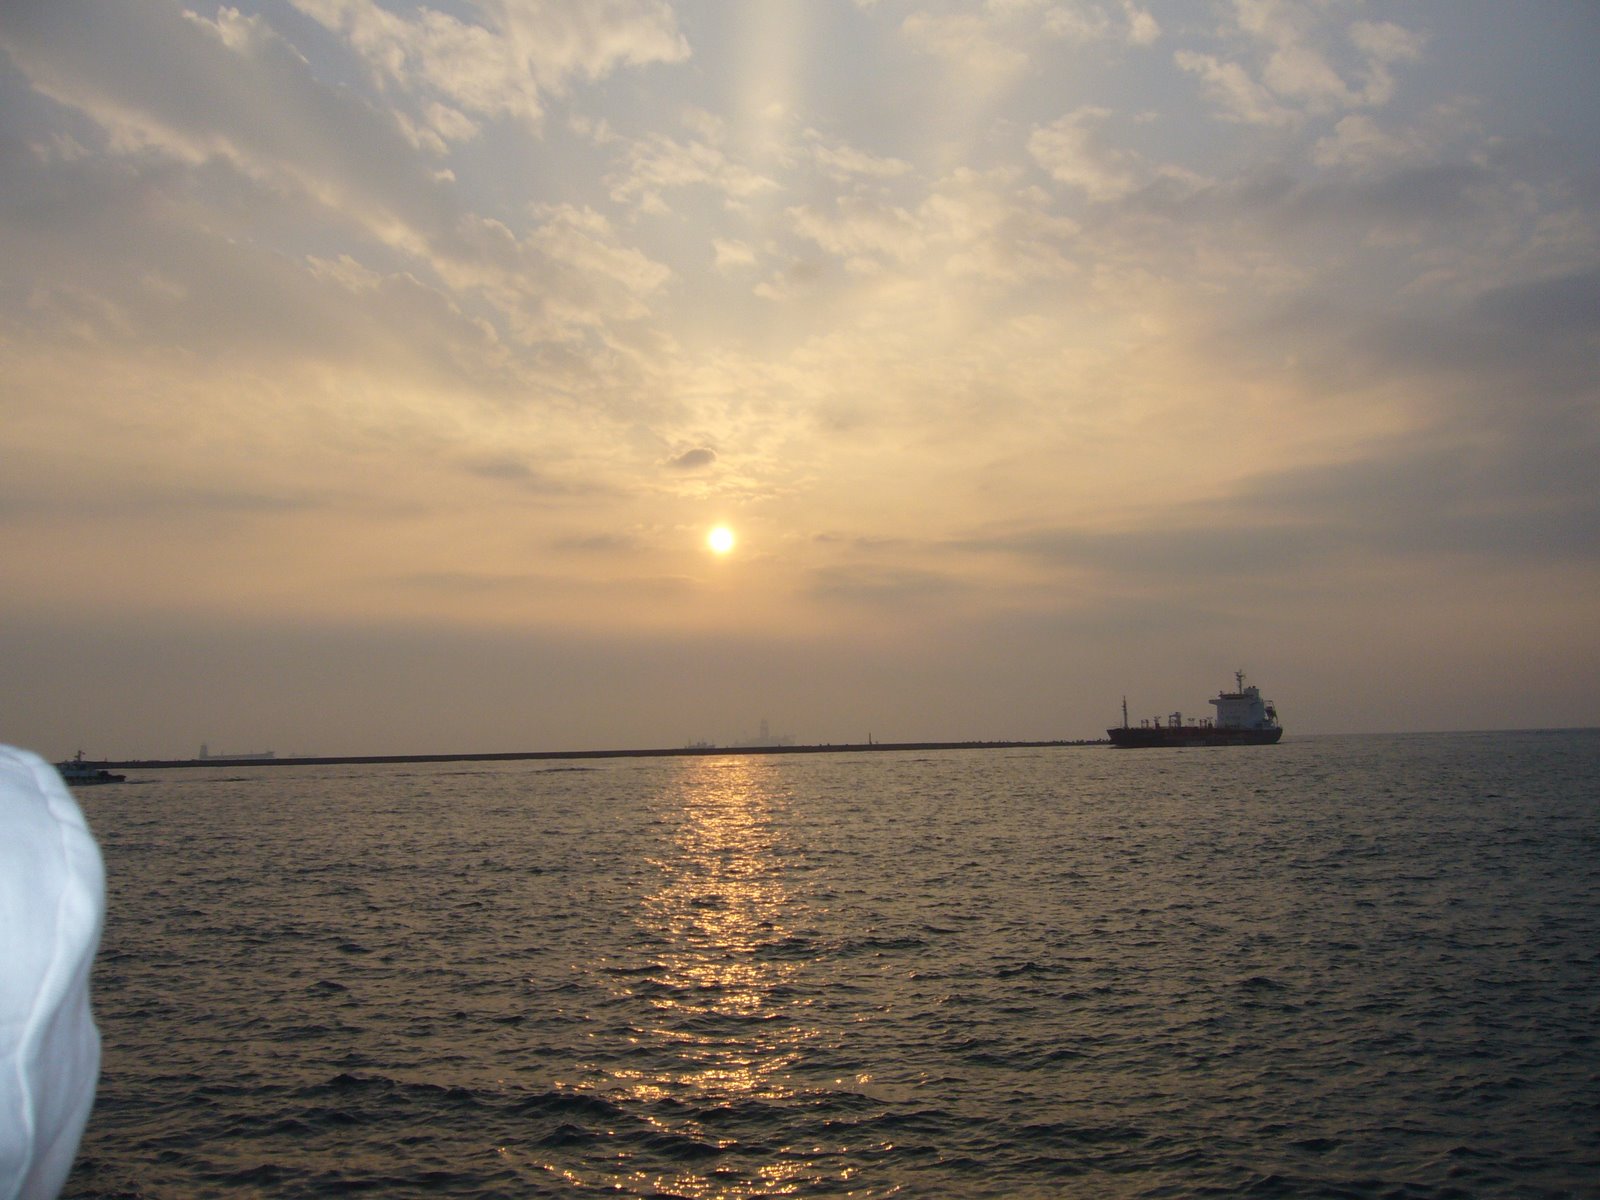 【携程攻略】高雄西子湾风景区景点,西子湾是看日落的绝佳地点，看着渔船来来往往感觉很棒。著名的台湾中…